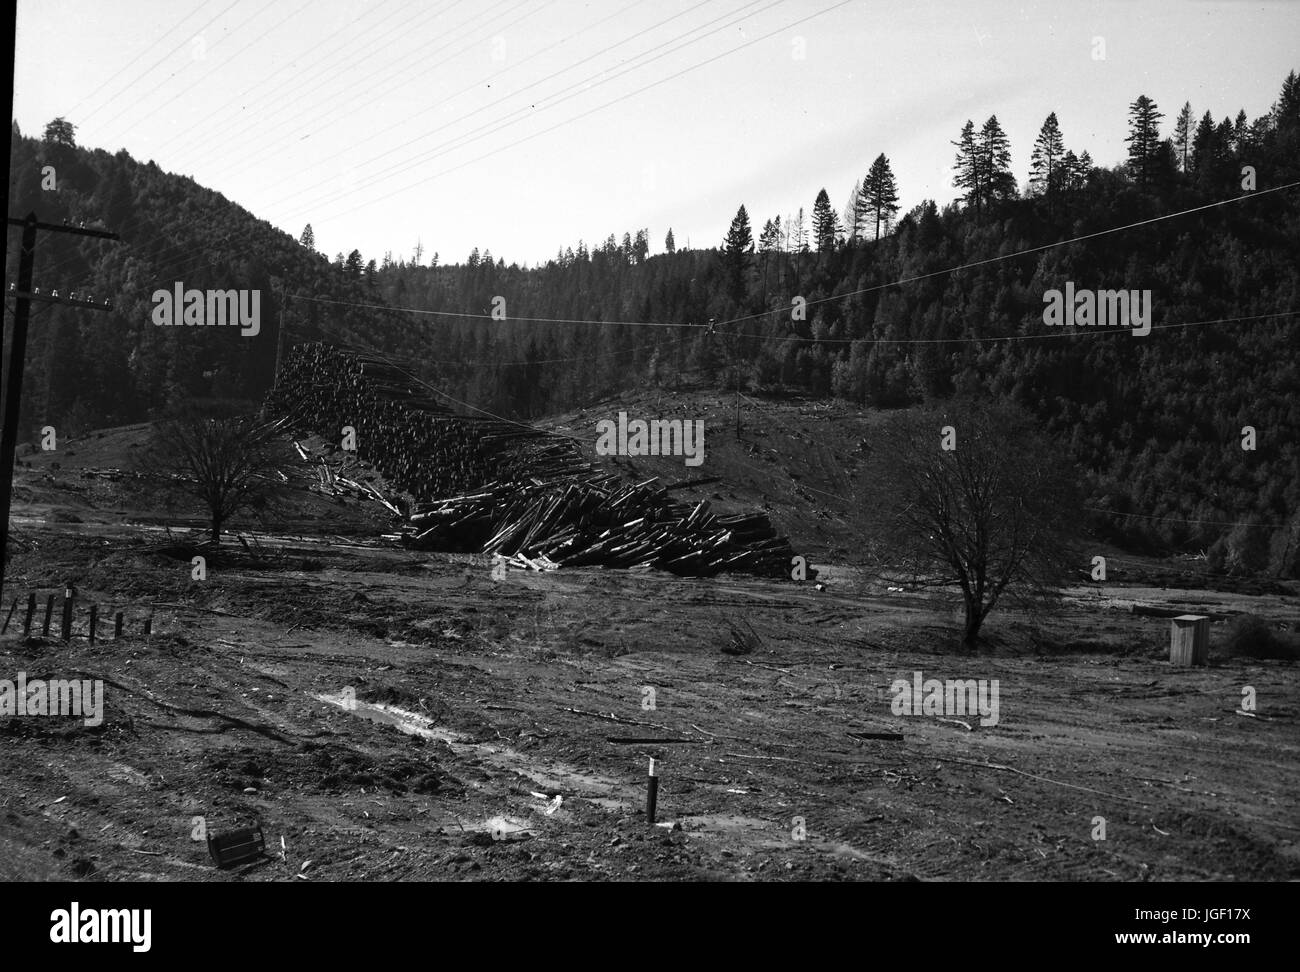 Ein großer Haufen von Protokollen aus gefällten Bäumen ist sichtbar in einem Waldgebiet mit einer Oberleitung Kran verwendet, um die Protokolle und einer klaren Schnitt, kargen Gegend sichtbar in den Vordergrund, Kalifornien, 1950 bewegen. Stockfoto